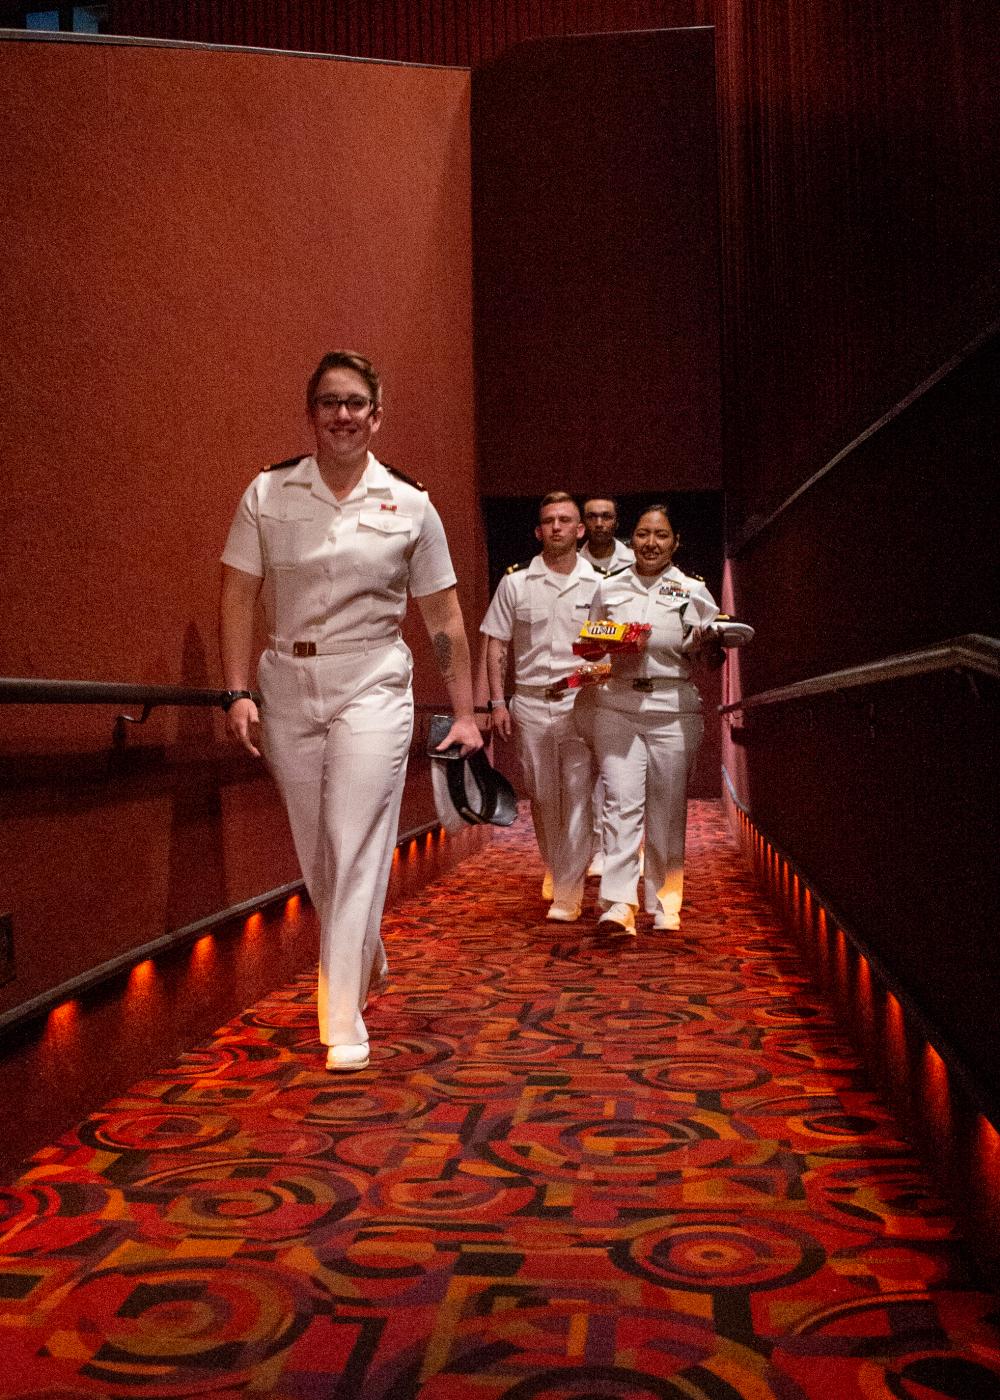 LAFW Sailors watch a screening of 'Top Gun: Maverick'